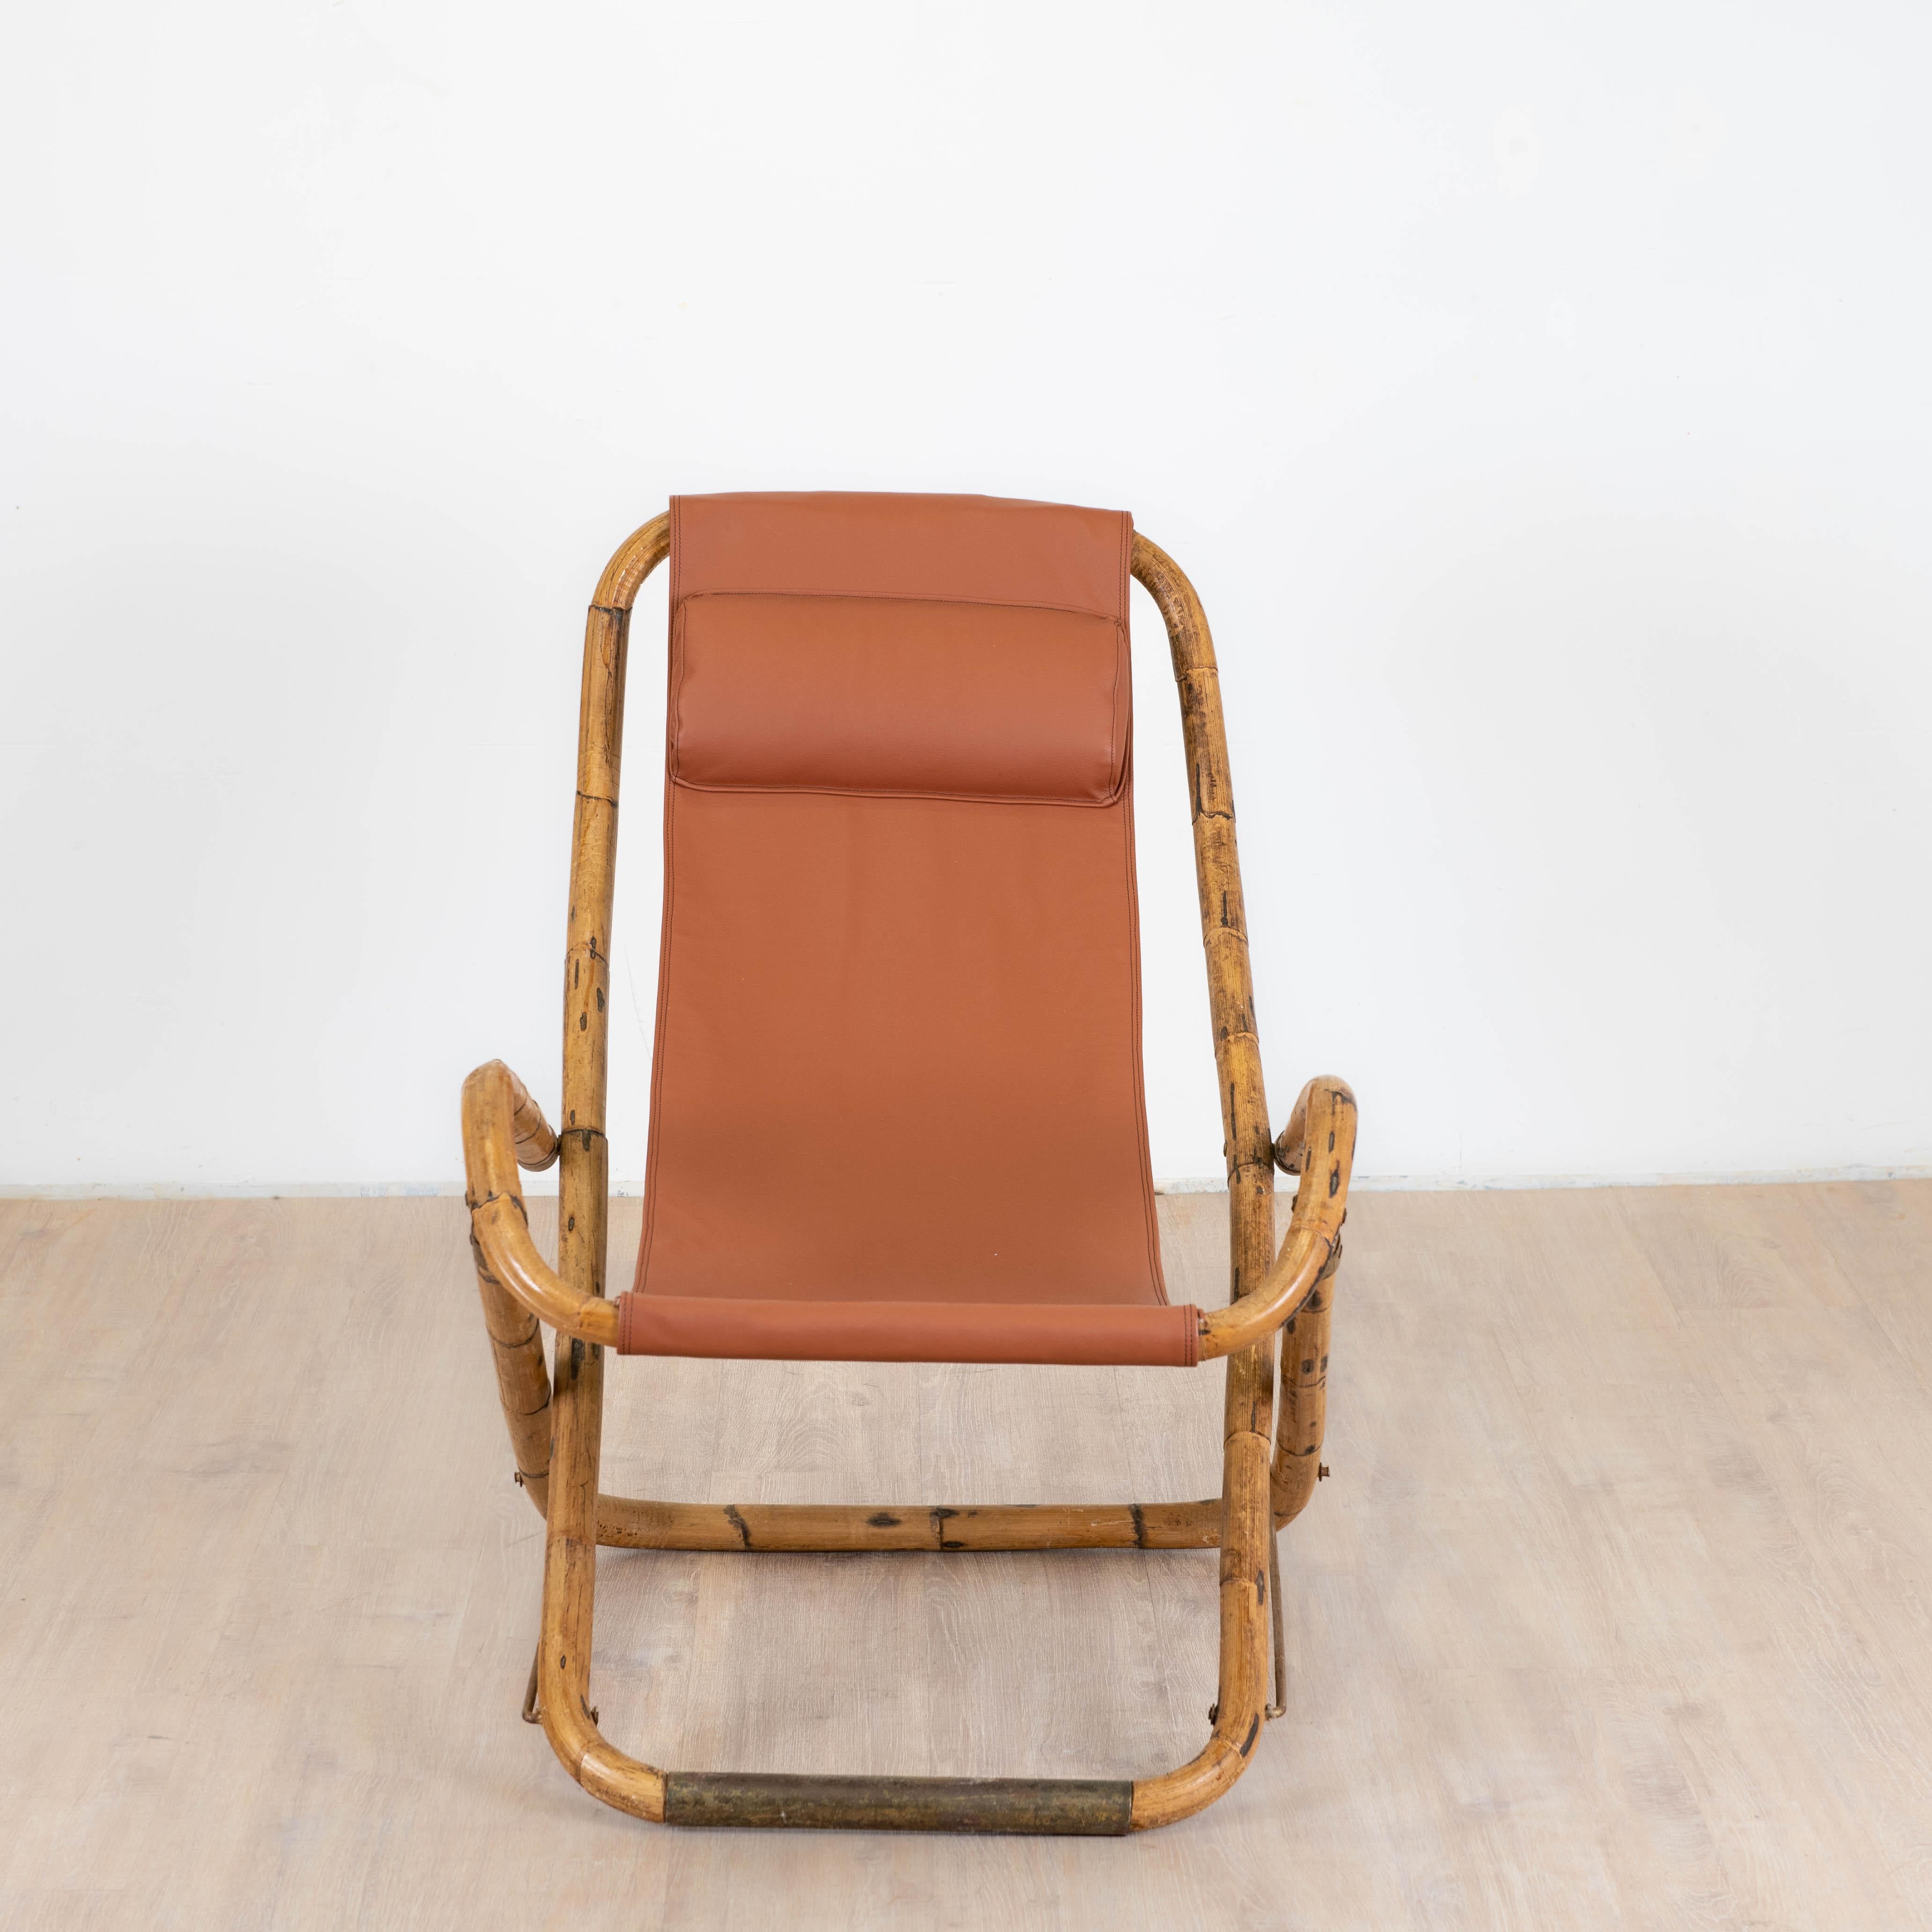 Transat de fabrication italienne des années 1960 la chaise longue pliante est en bambou plié, les charnières, les protection en contact du sol sont en laiton patiné par le temps. Die neu gestaltete Tasche mit wiederverwendbarem Kopfteil besteht aus